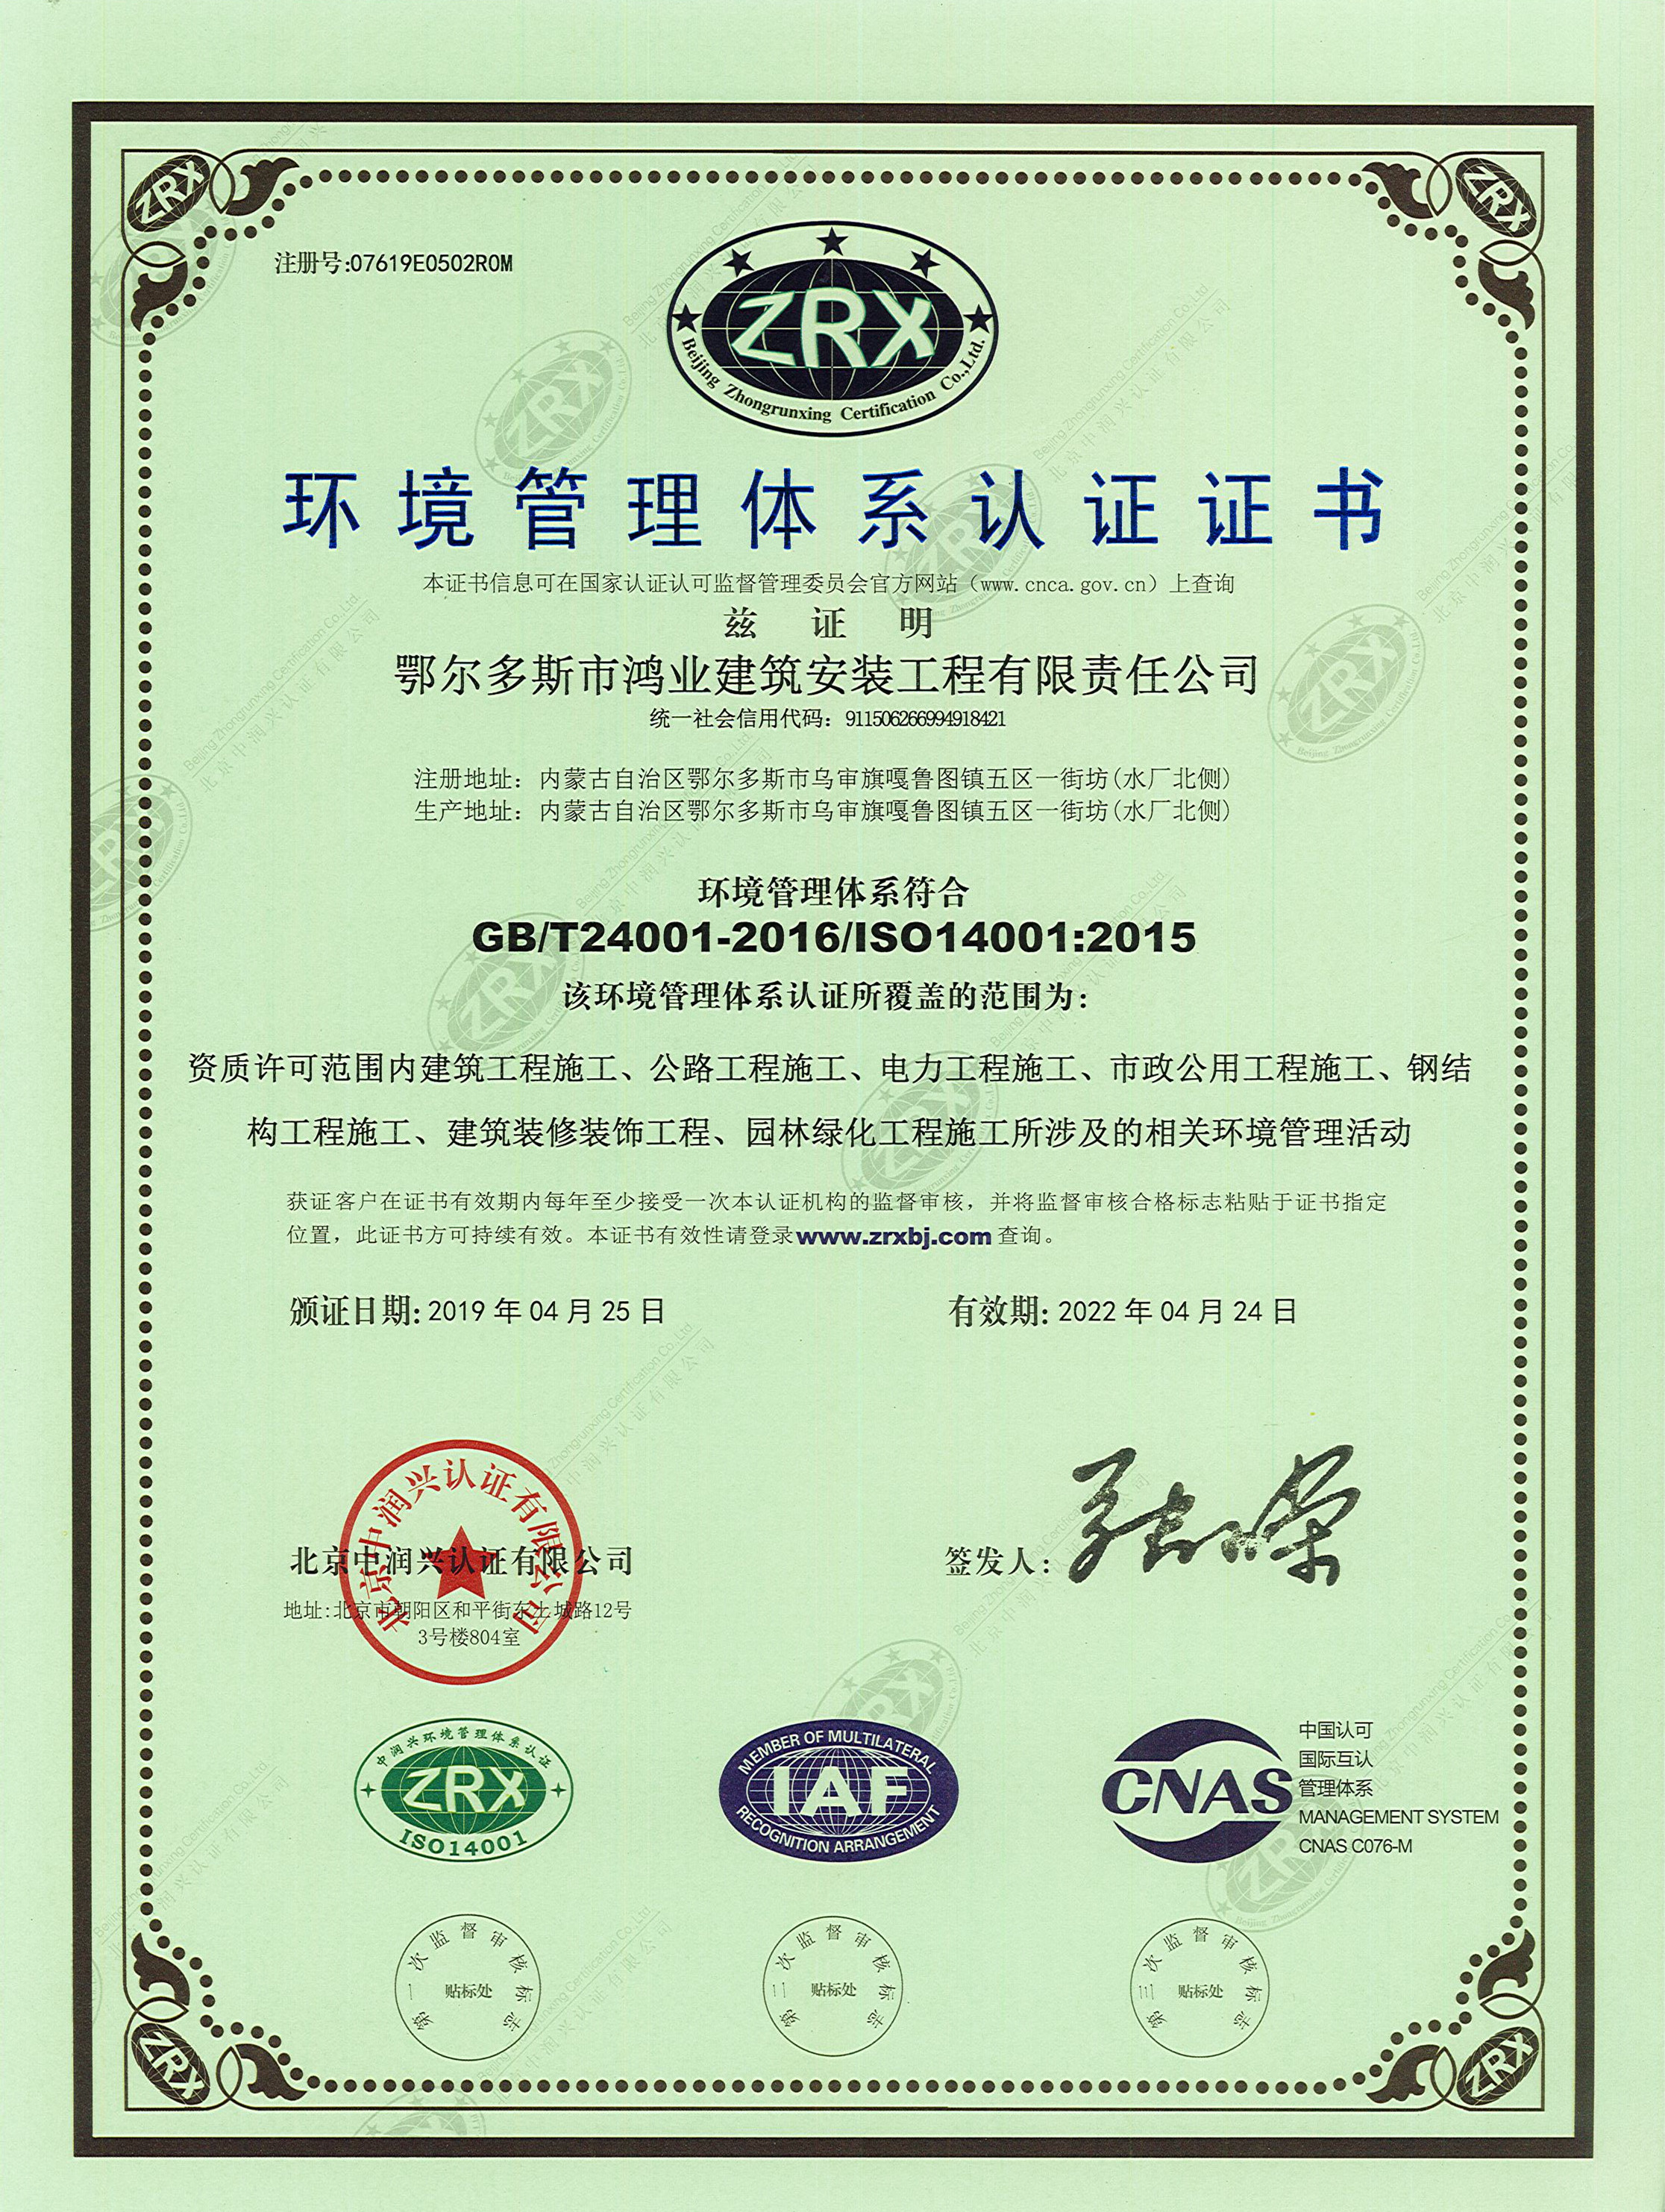 环境管理体系认证证书 (2).jpg